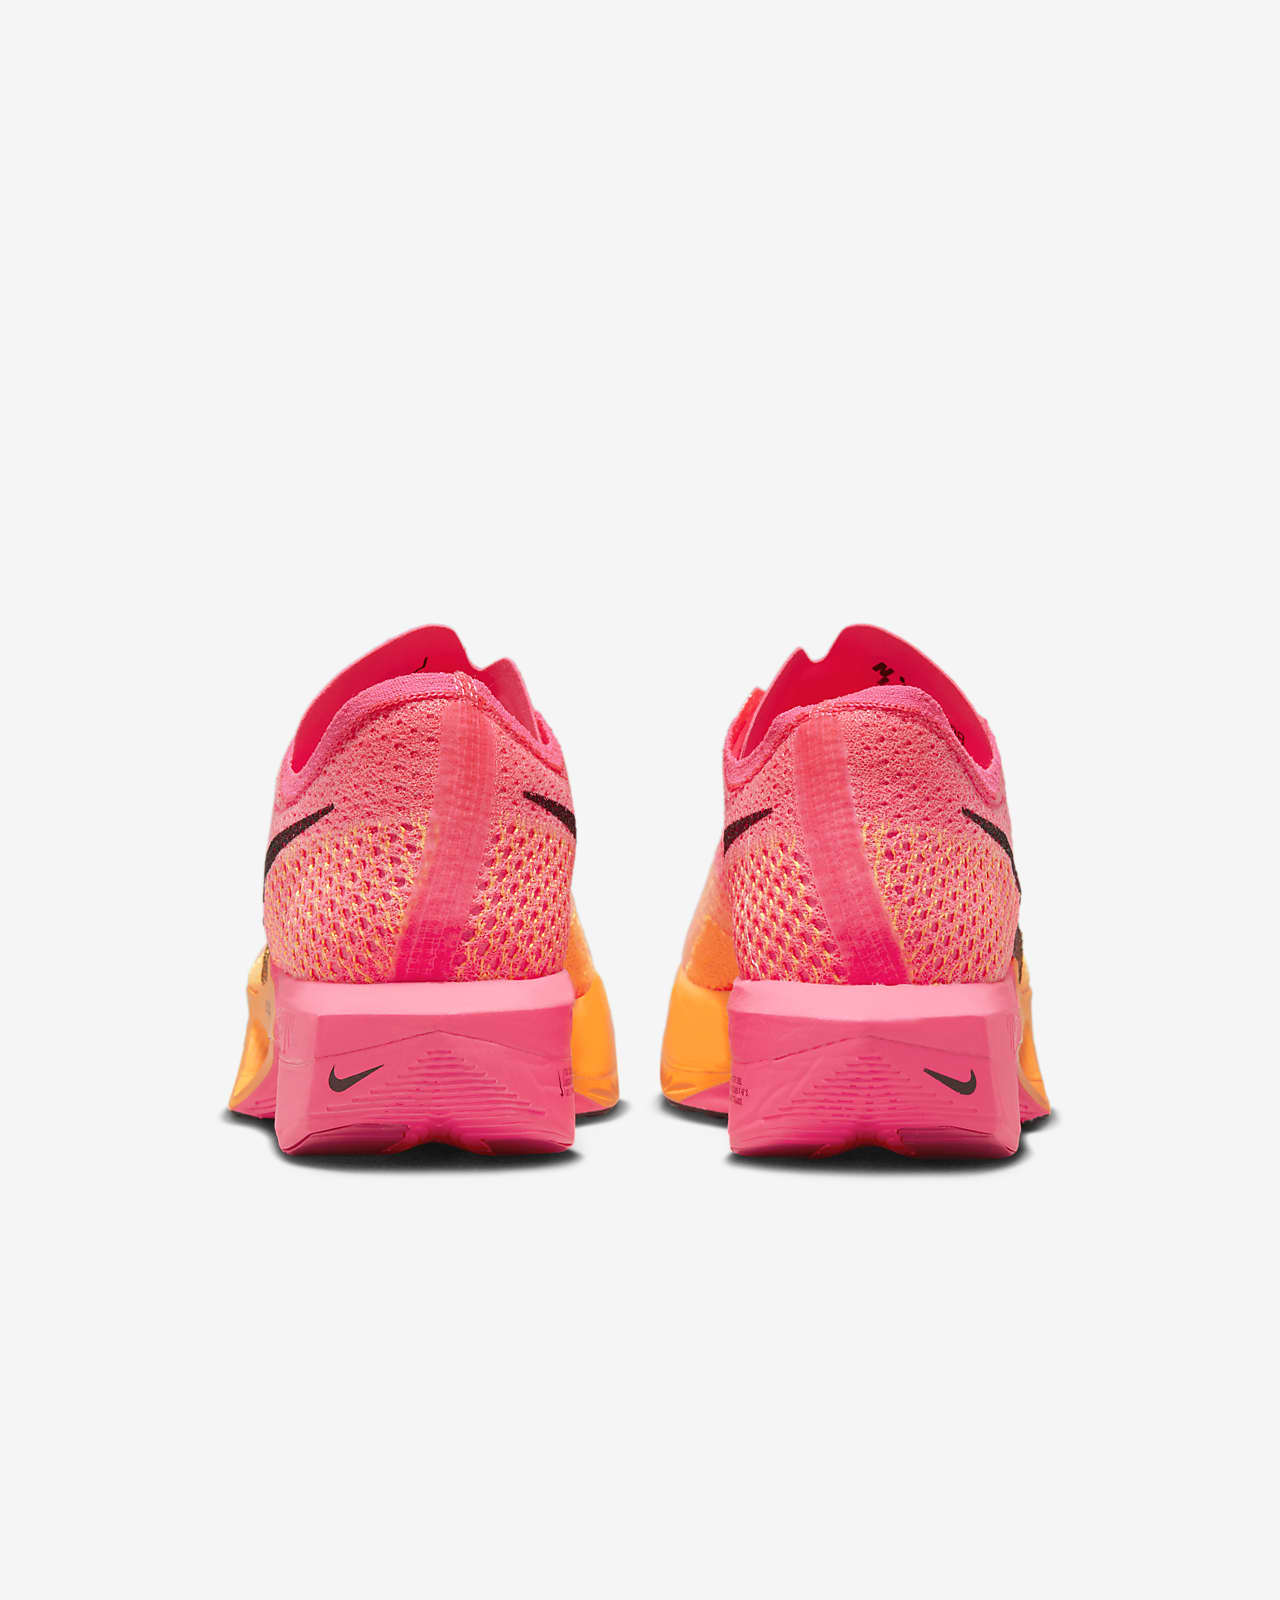 Opresor unos pocos Corrección Nike Vaporfly 3 Women's Road Racing Shoes. Nike.com